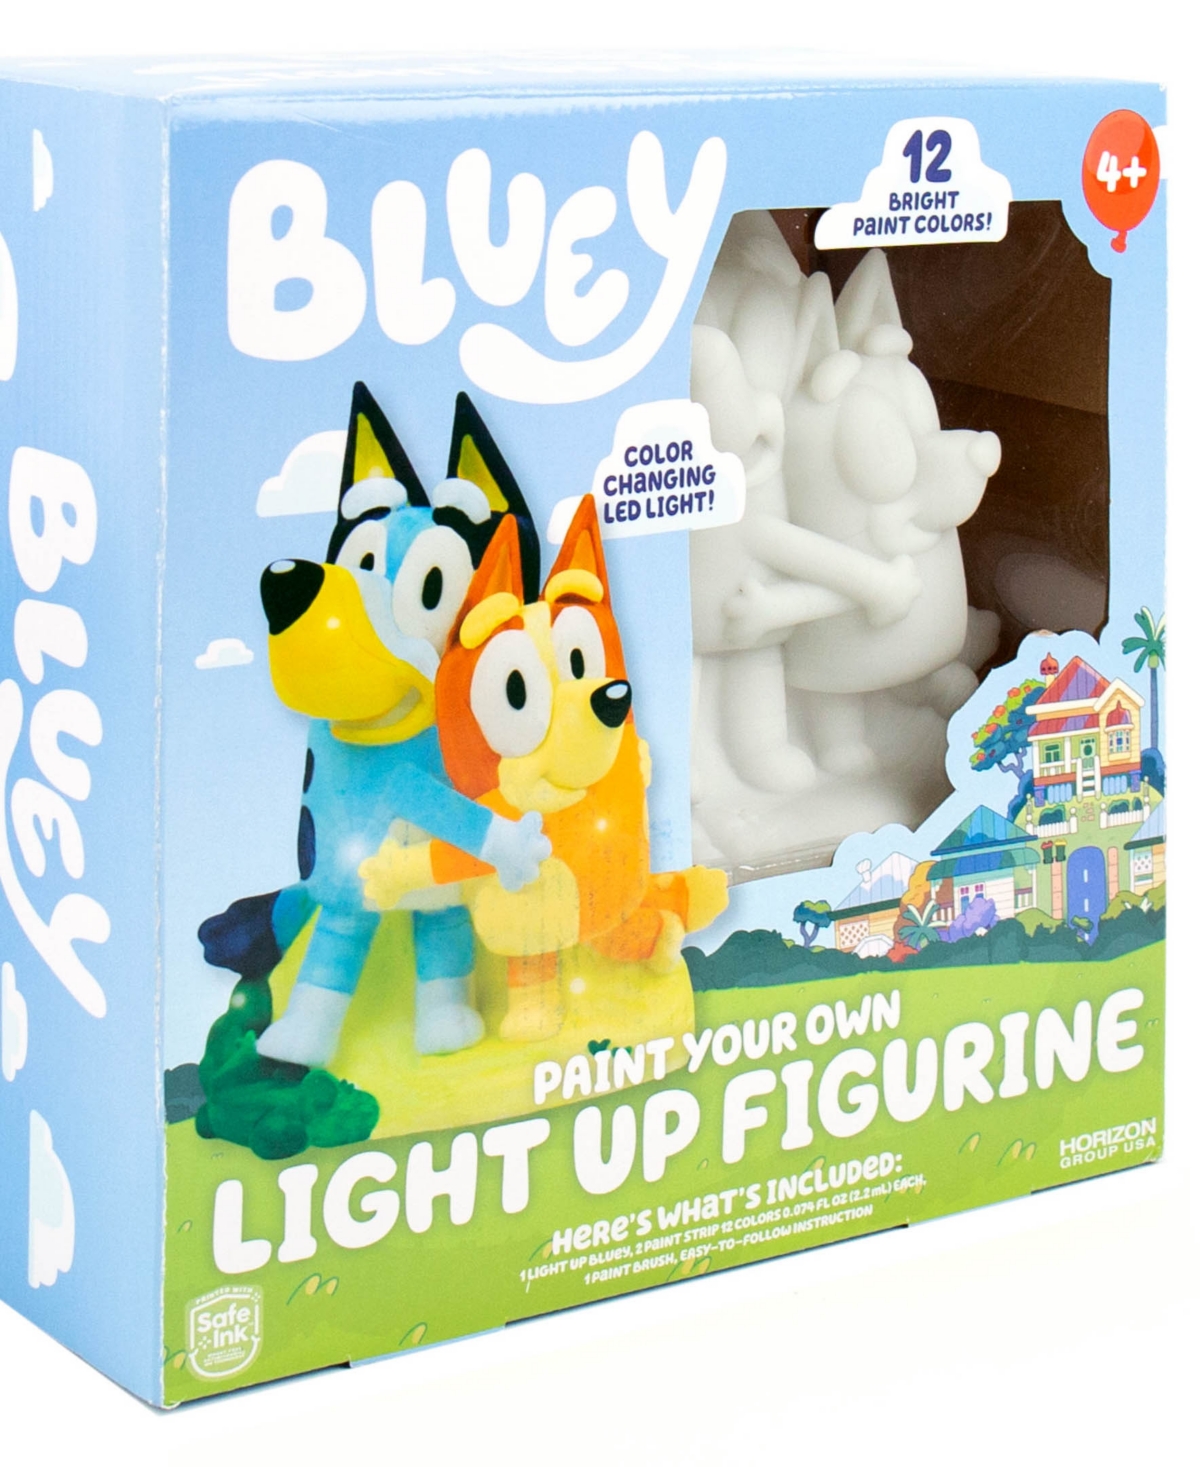 Light Up Figurine Set, 5 Piece - Multi